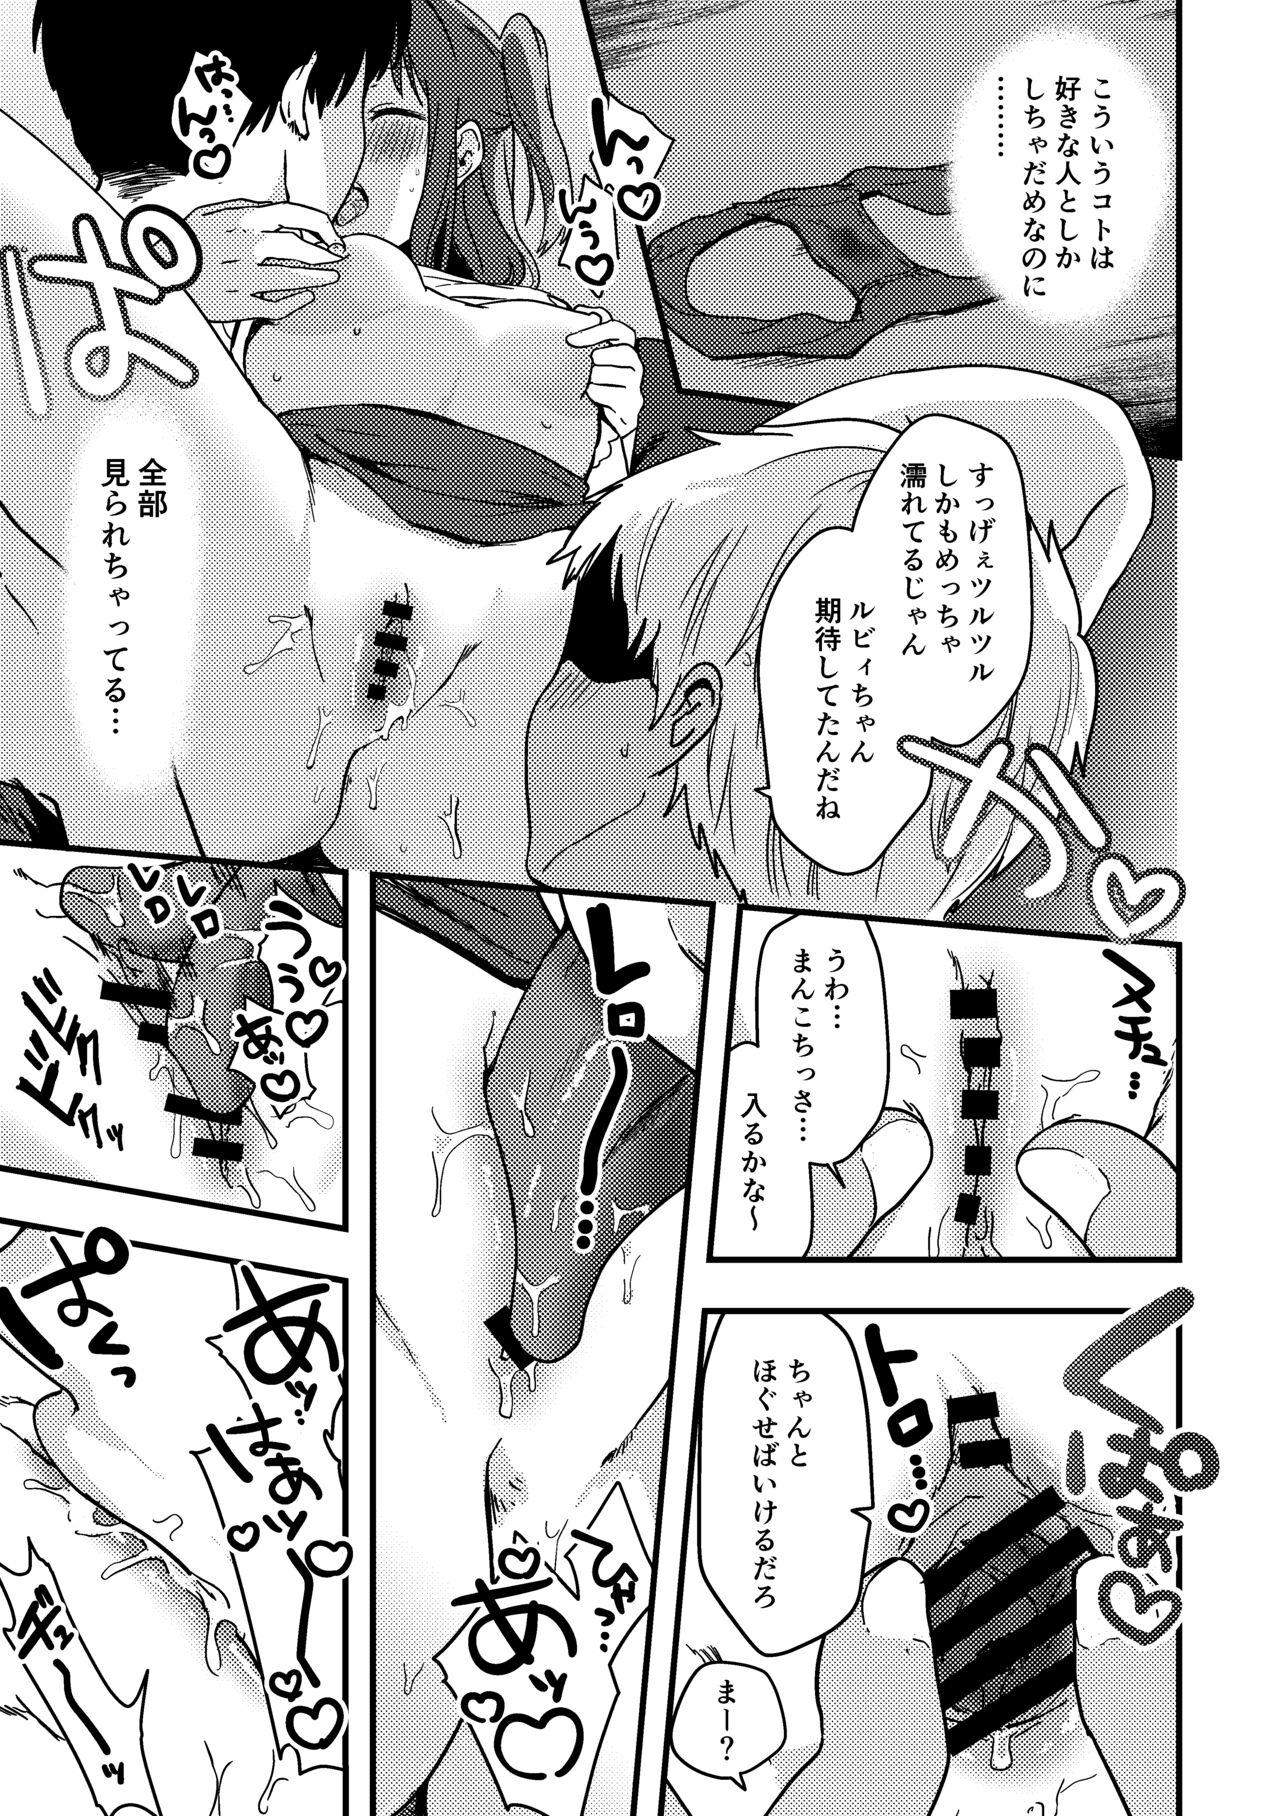 Ruby-chan no 10 Page Manga 3